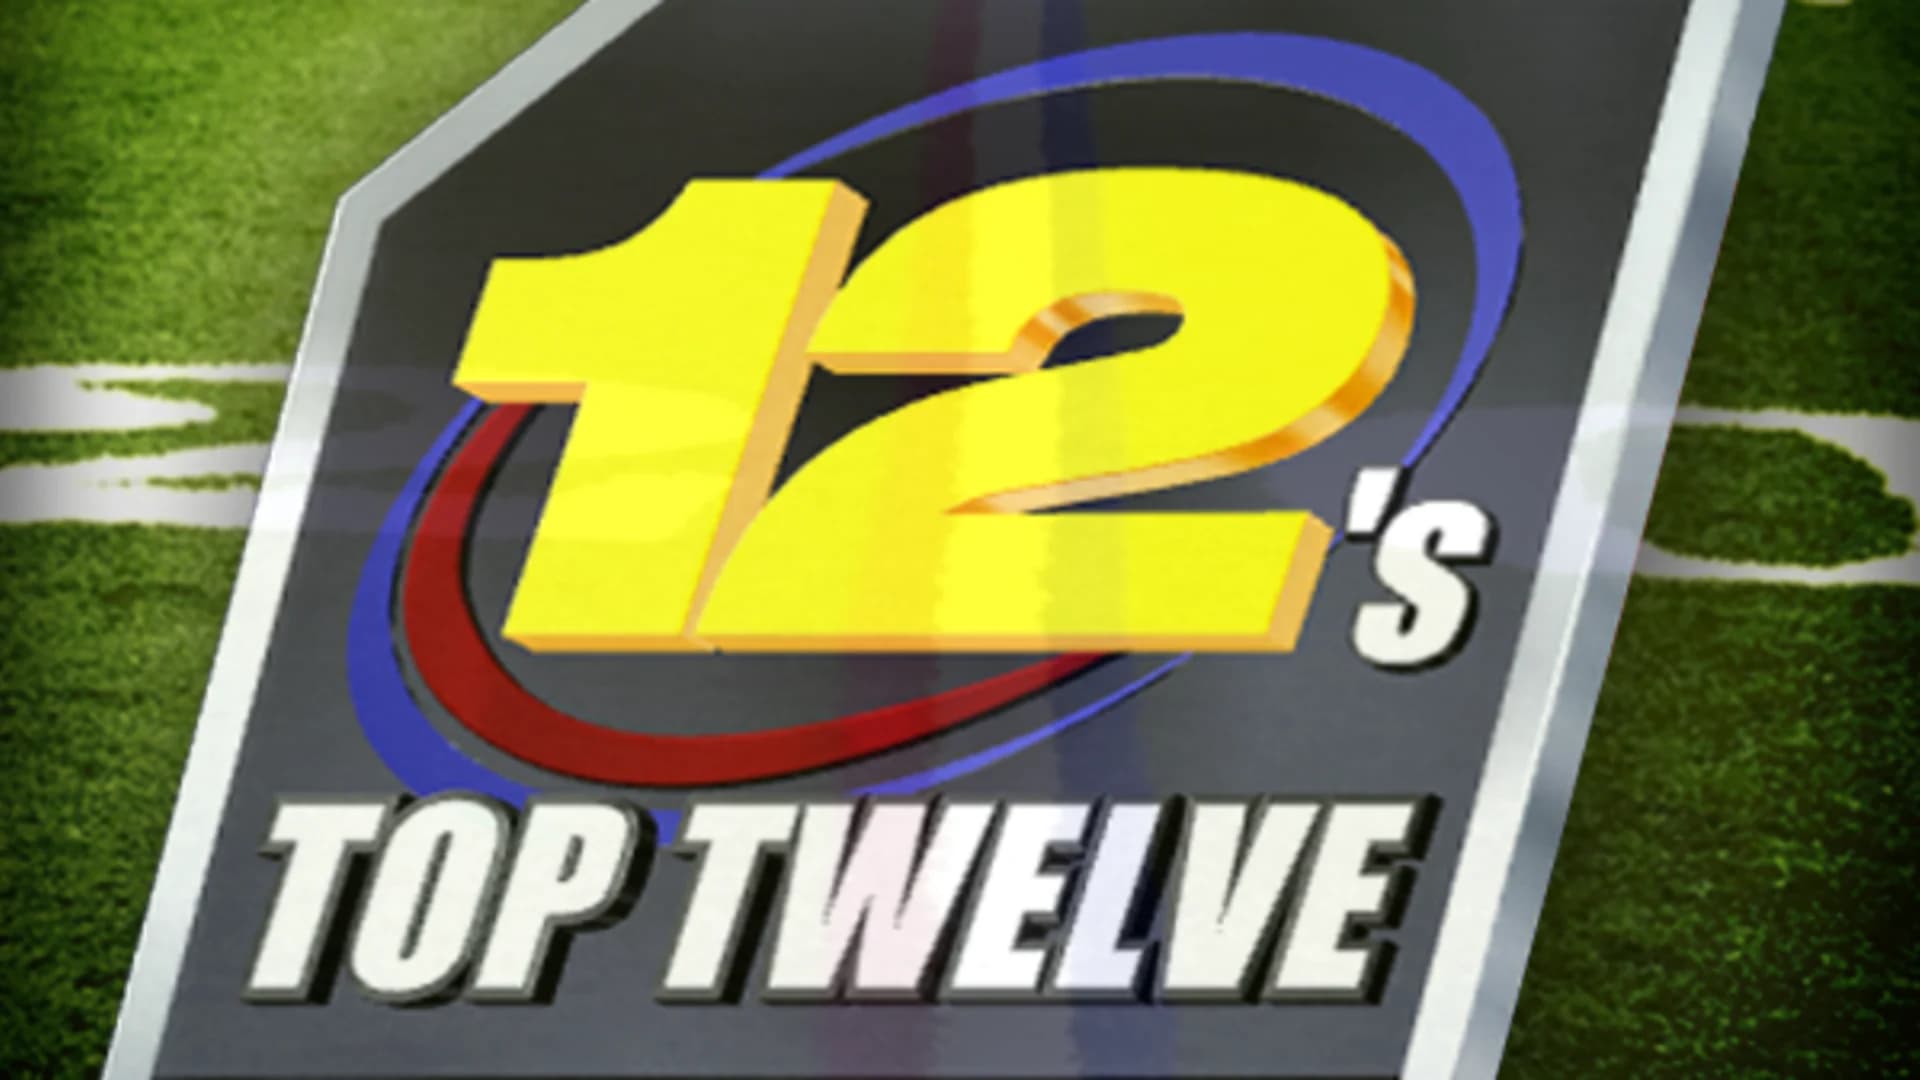 12’s Top Twelve: High school football rankings